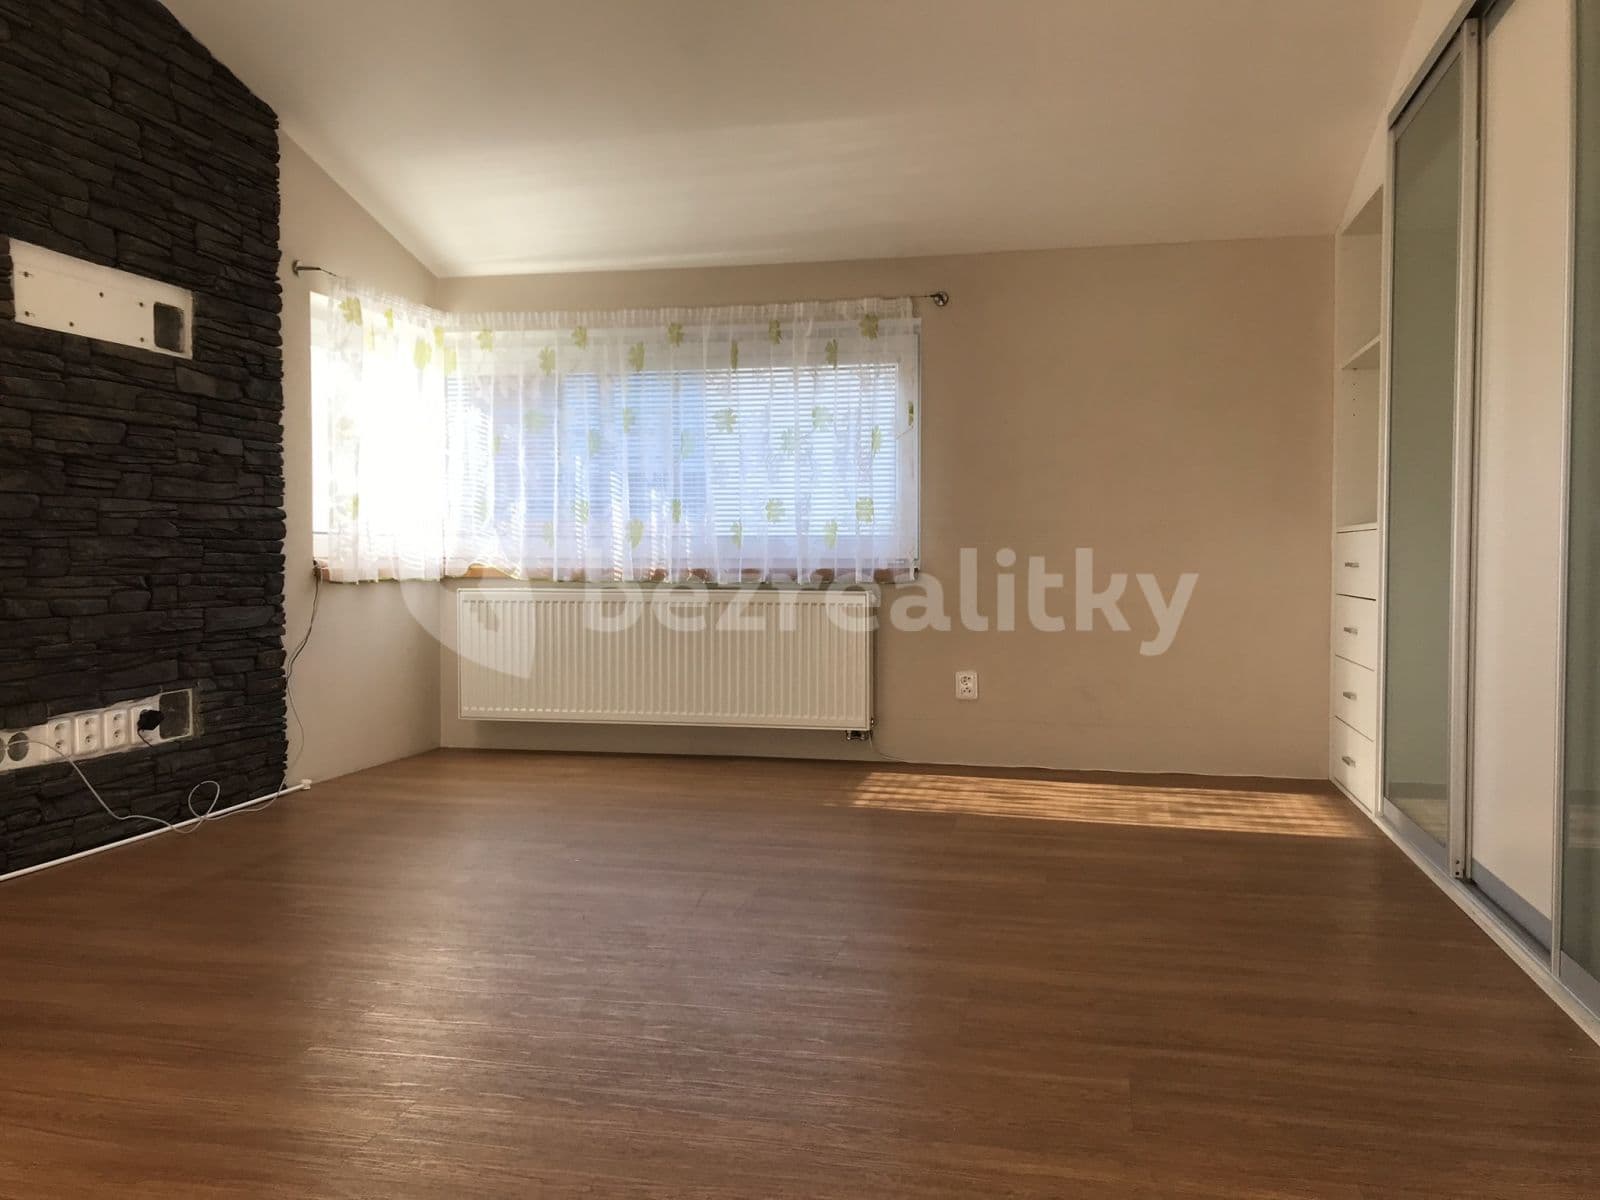 1 bedroom with open-plan kitchen flat to rent, 55 m², K Vrbičkám, Moravany, Jihomoravský Region